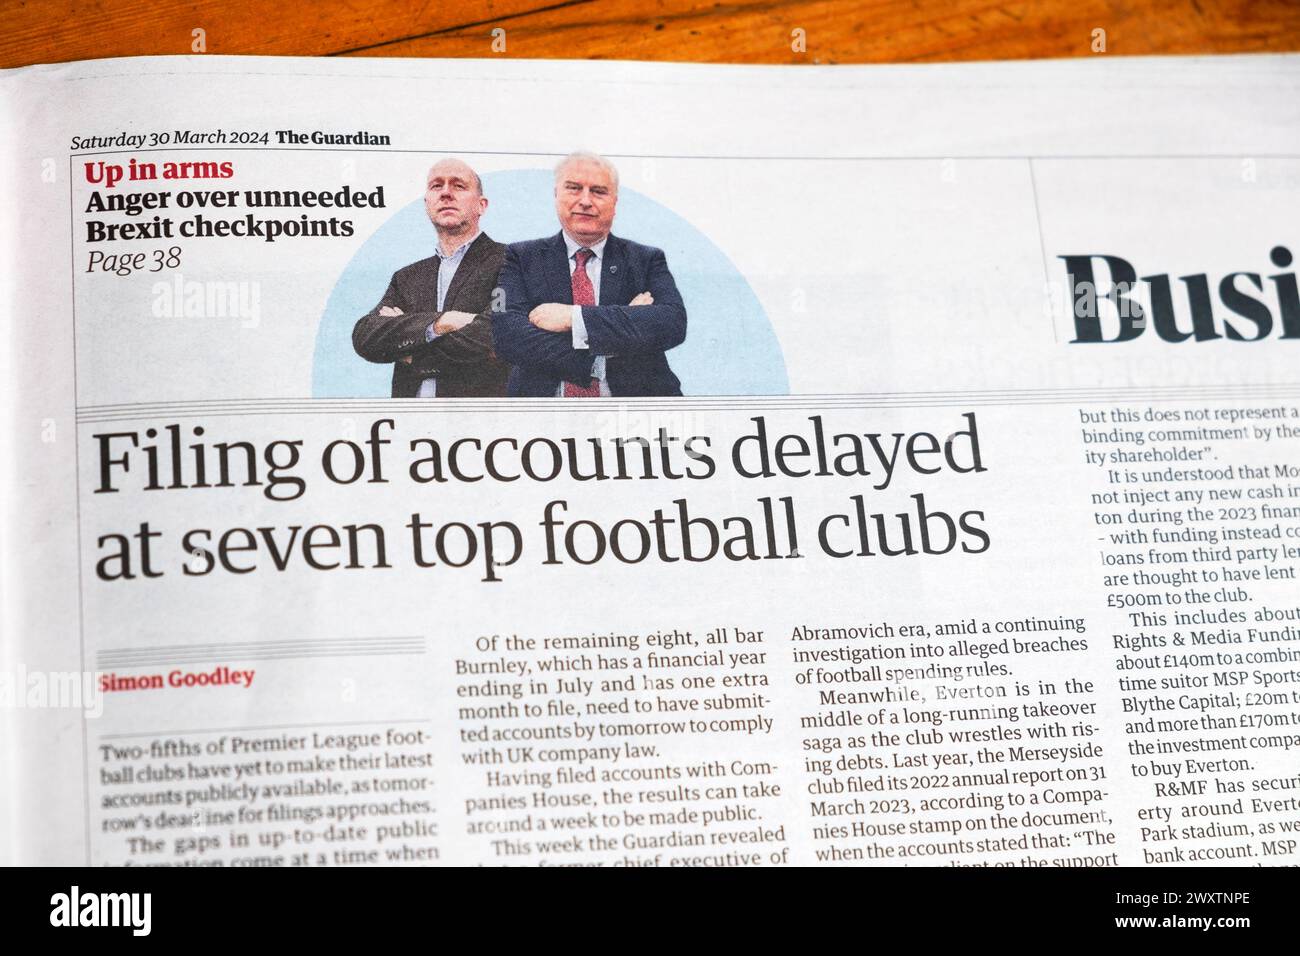 "Deposito dei conti ritardato presso sette delle migliori squadre di calcio" il quotidiano Guardian ha pubblicato l'articolo finanziario della Premier League 30 marzo 2024 Londra Regno Unito Foto Stock